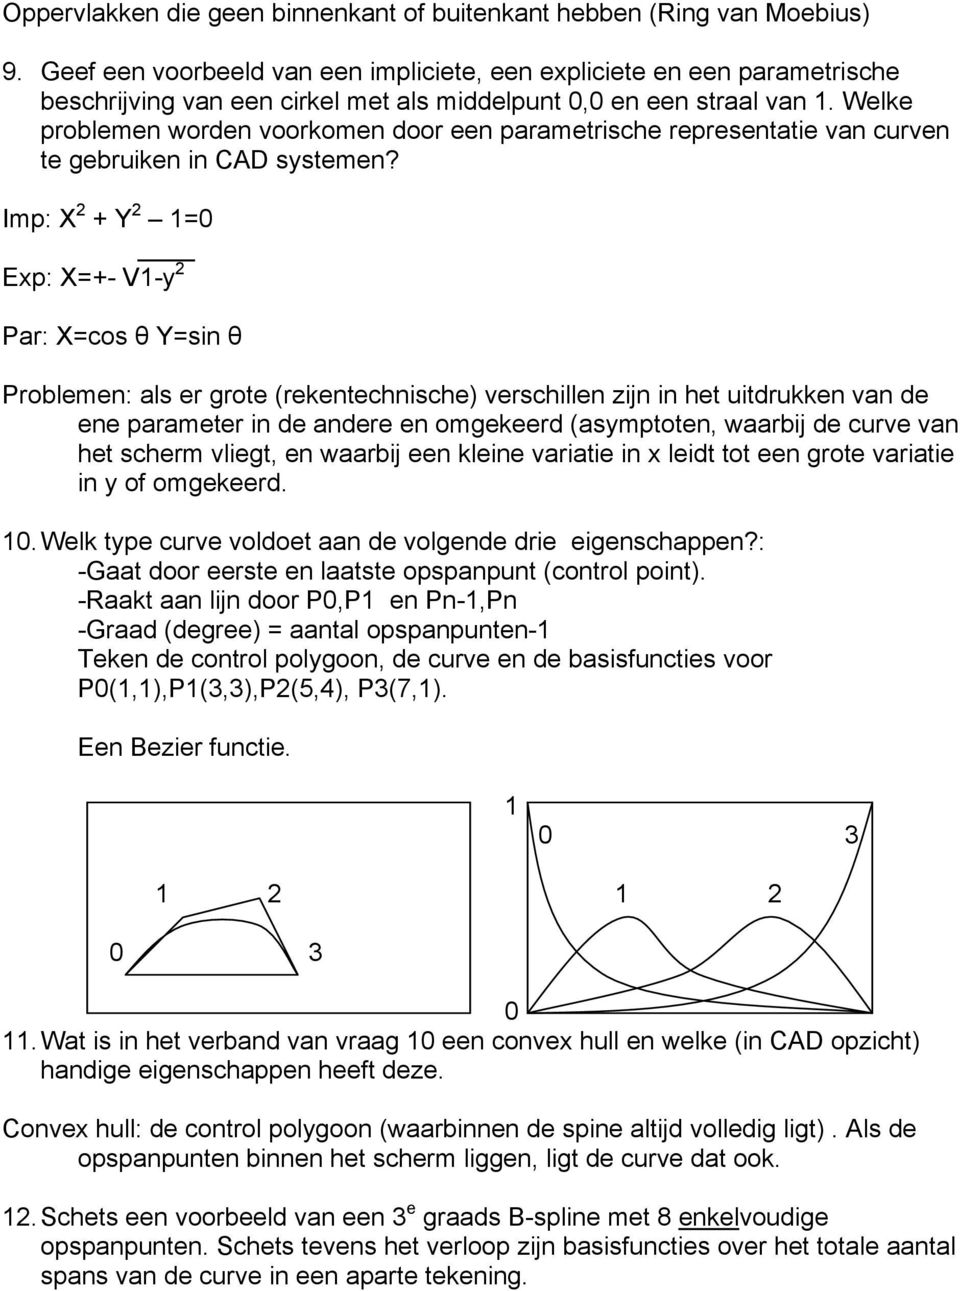 Welke problemen worden voorkomen door een parametrische representatie van curven te gebruiken in CAD systemen?